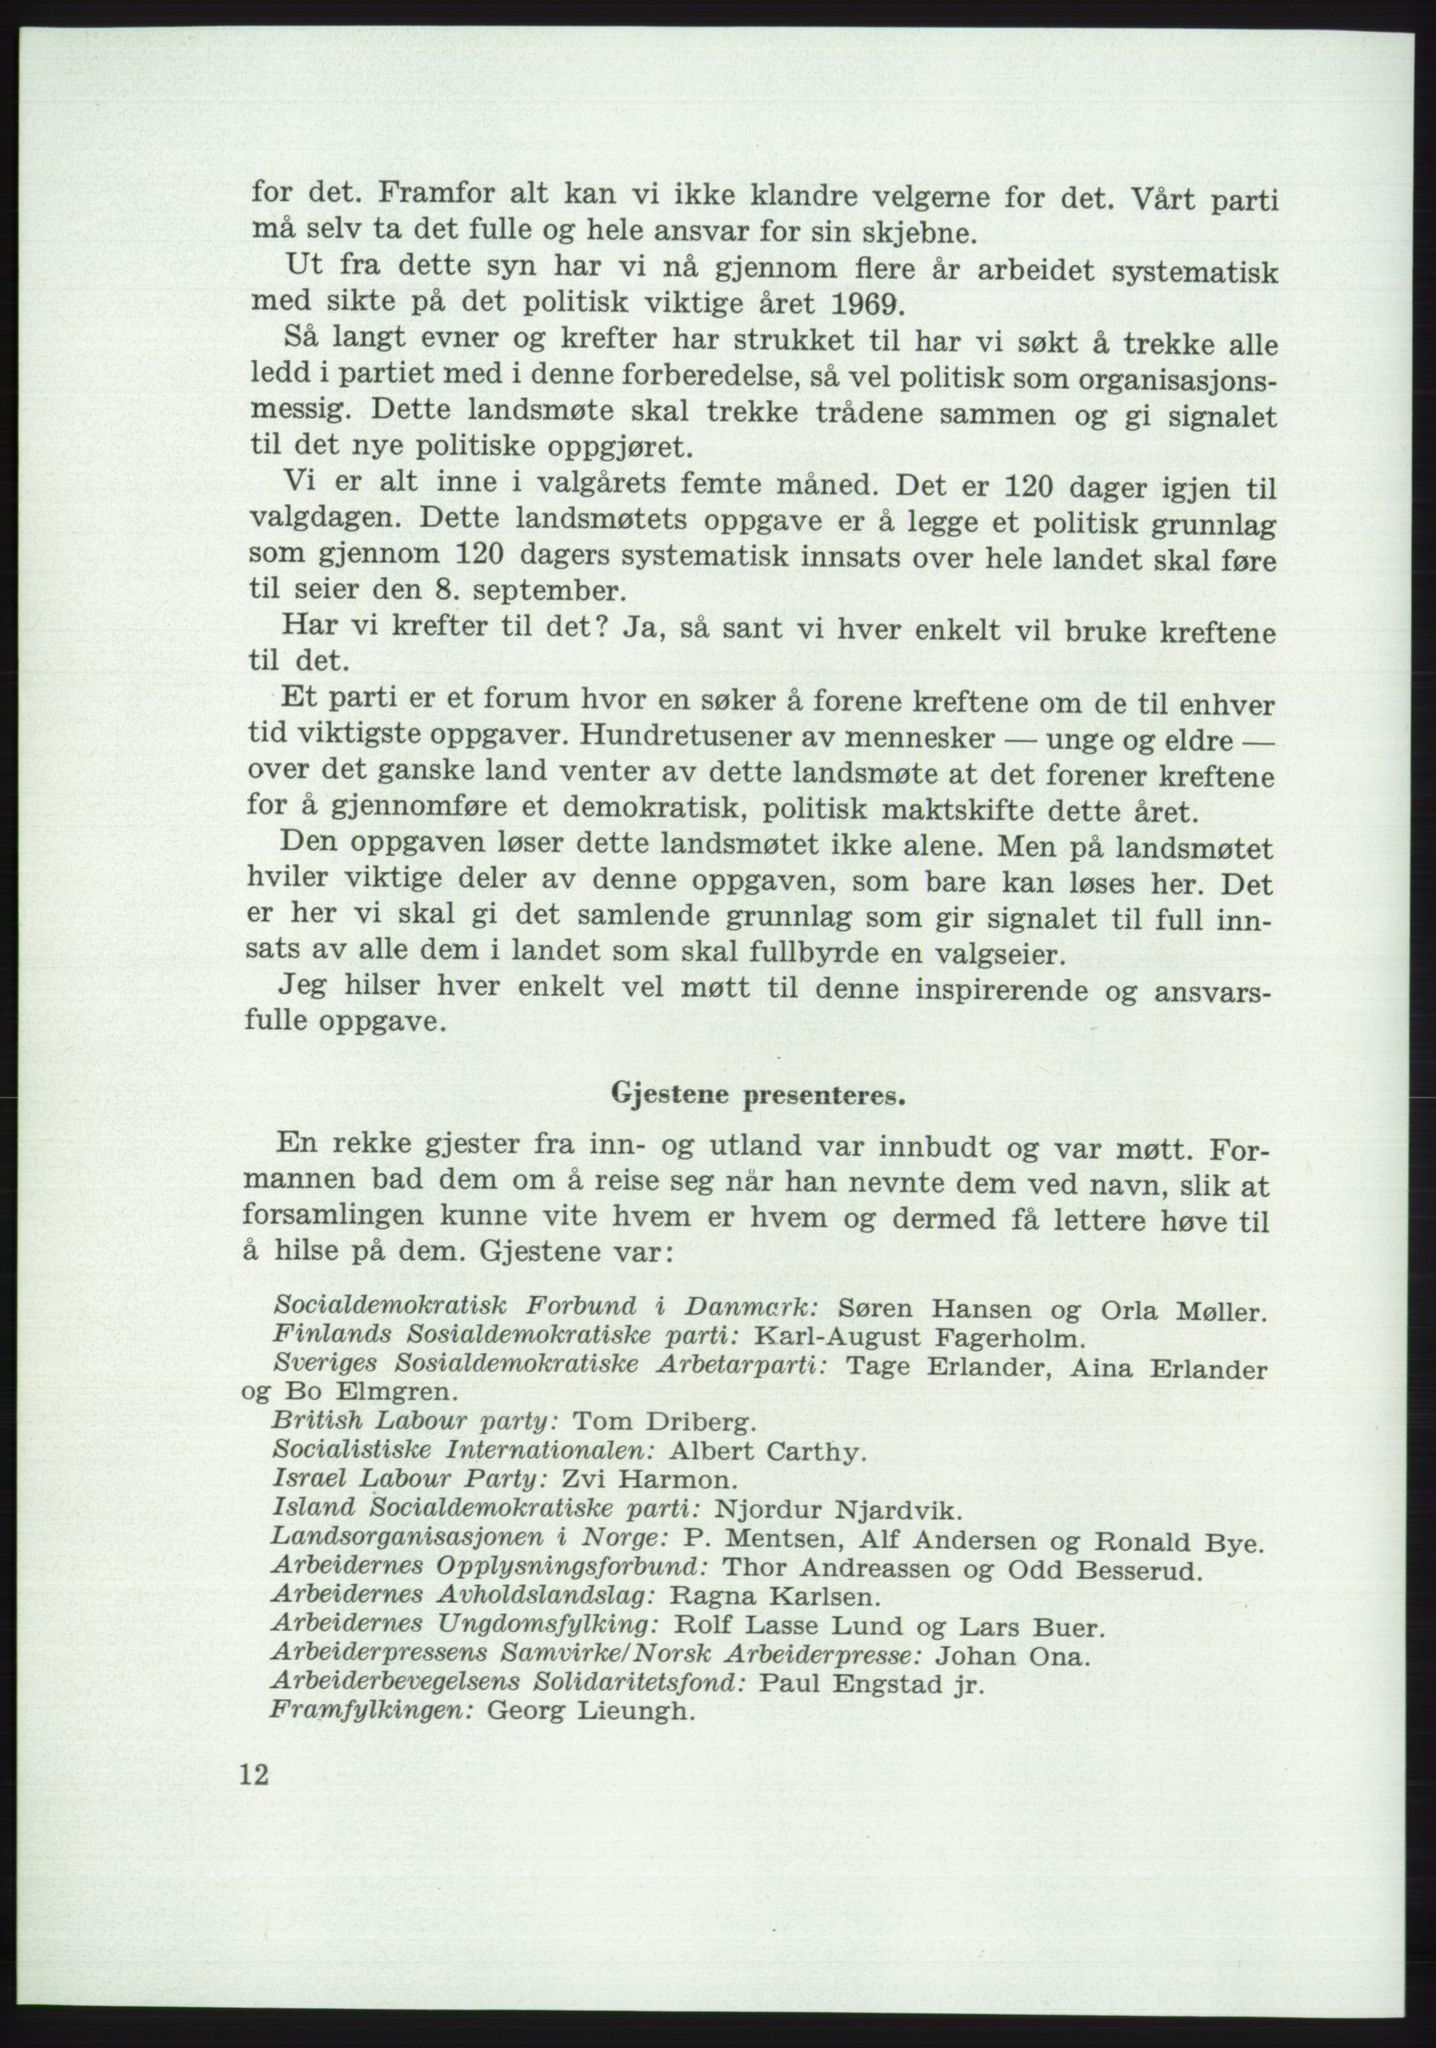 Det norske Arbeiderparti - publikasjoner, AAB/-/-/-: Protokoll over forhandlingene på det 42. ordinære landsmøte 11.-14. mai 1969 i Oslo, 1969, s. 12